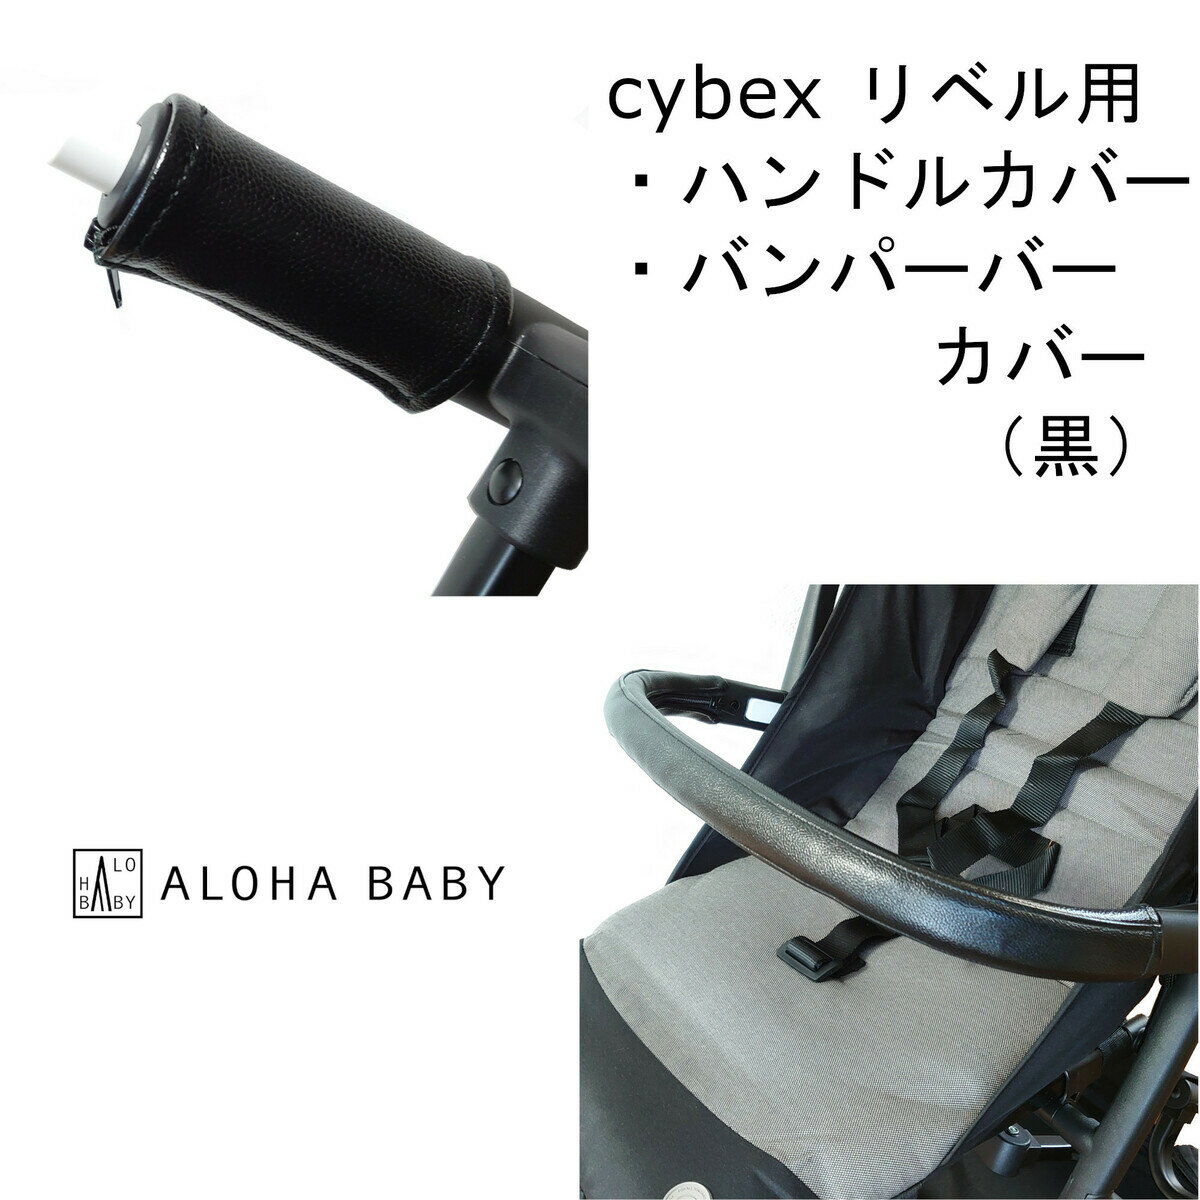 cybex リベル用 LIBELLE用 ハンドル...の商品画像